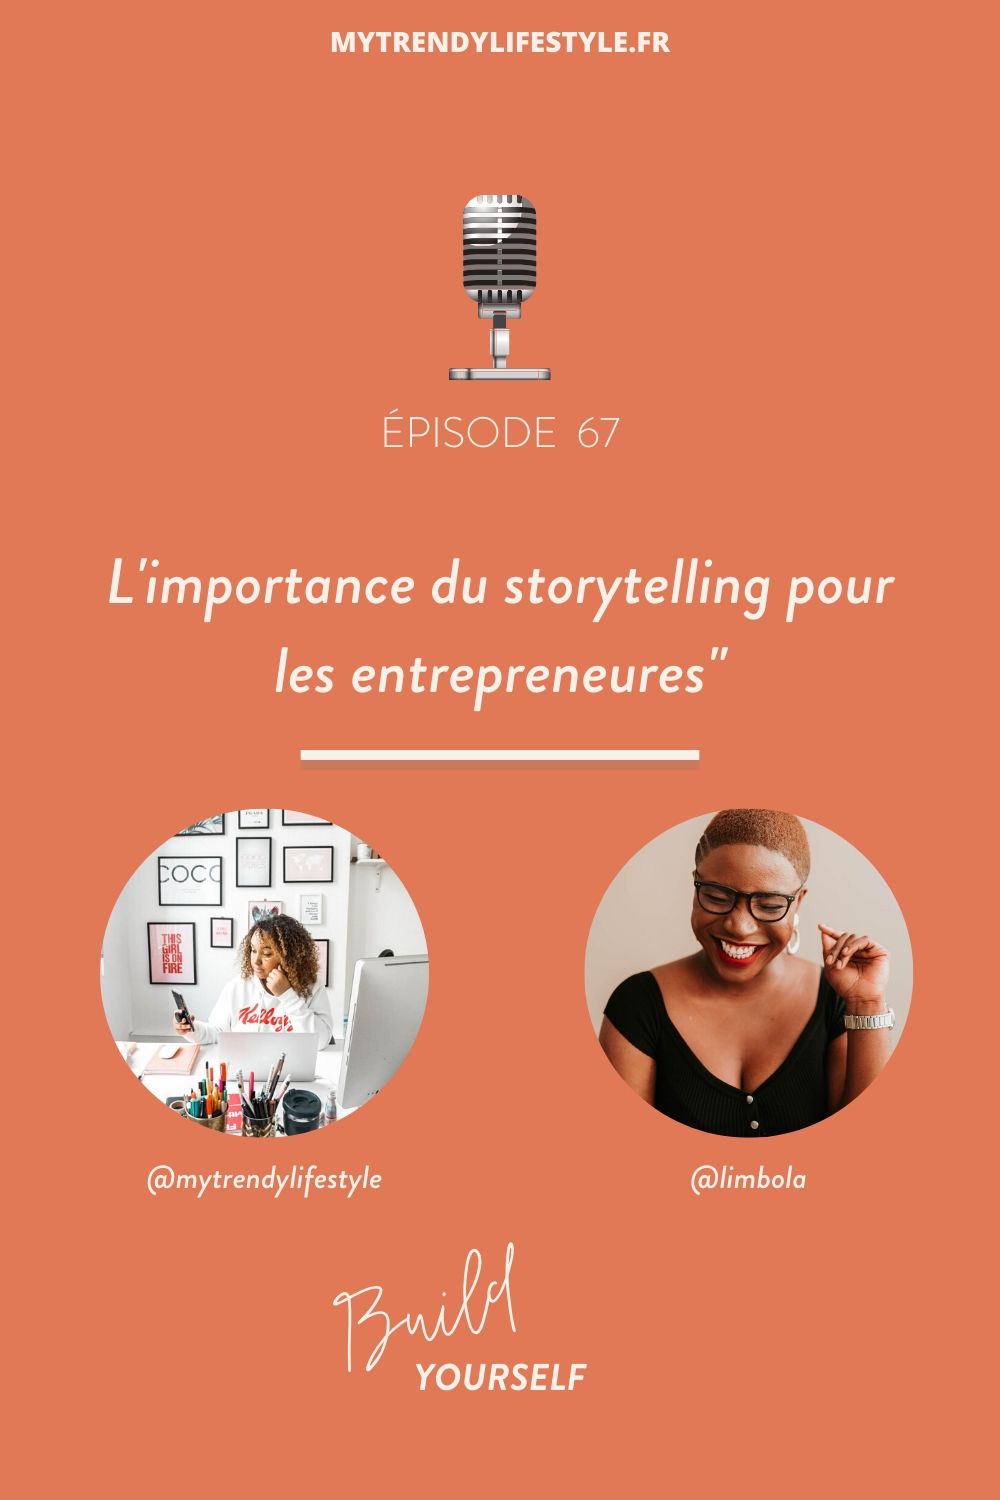 Découvrez dans cet épisode de Build Yourself ce qu'est le storytelling, pourquoi il est important pour les entrepreneurs et comment le mettre en place.